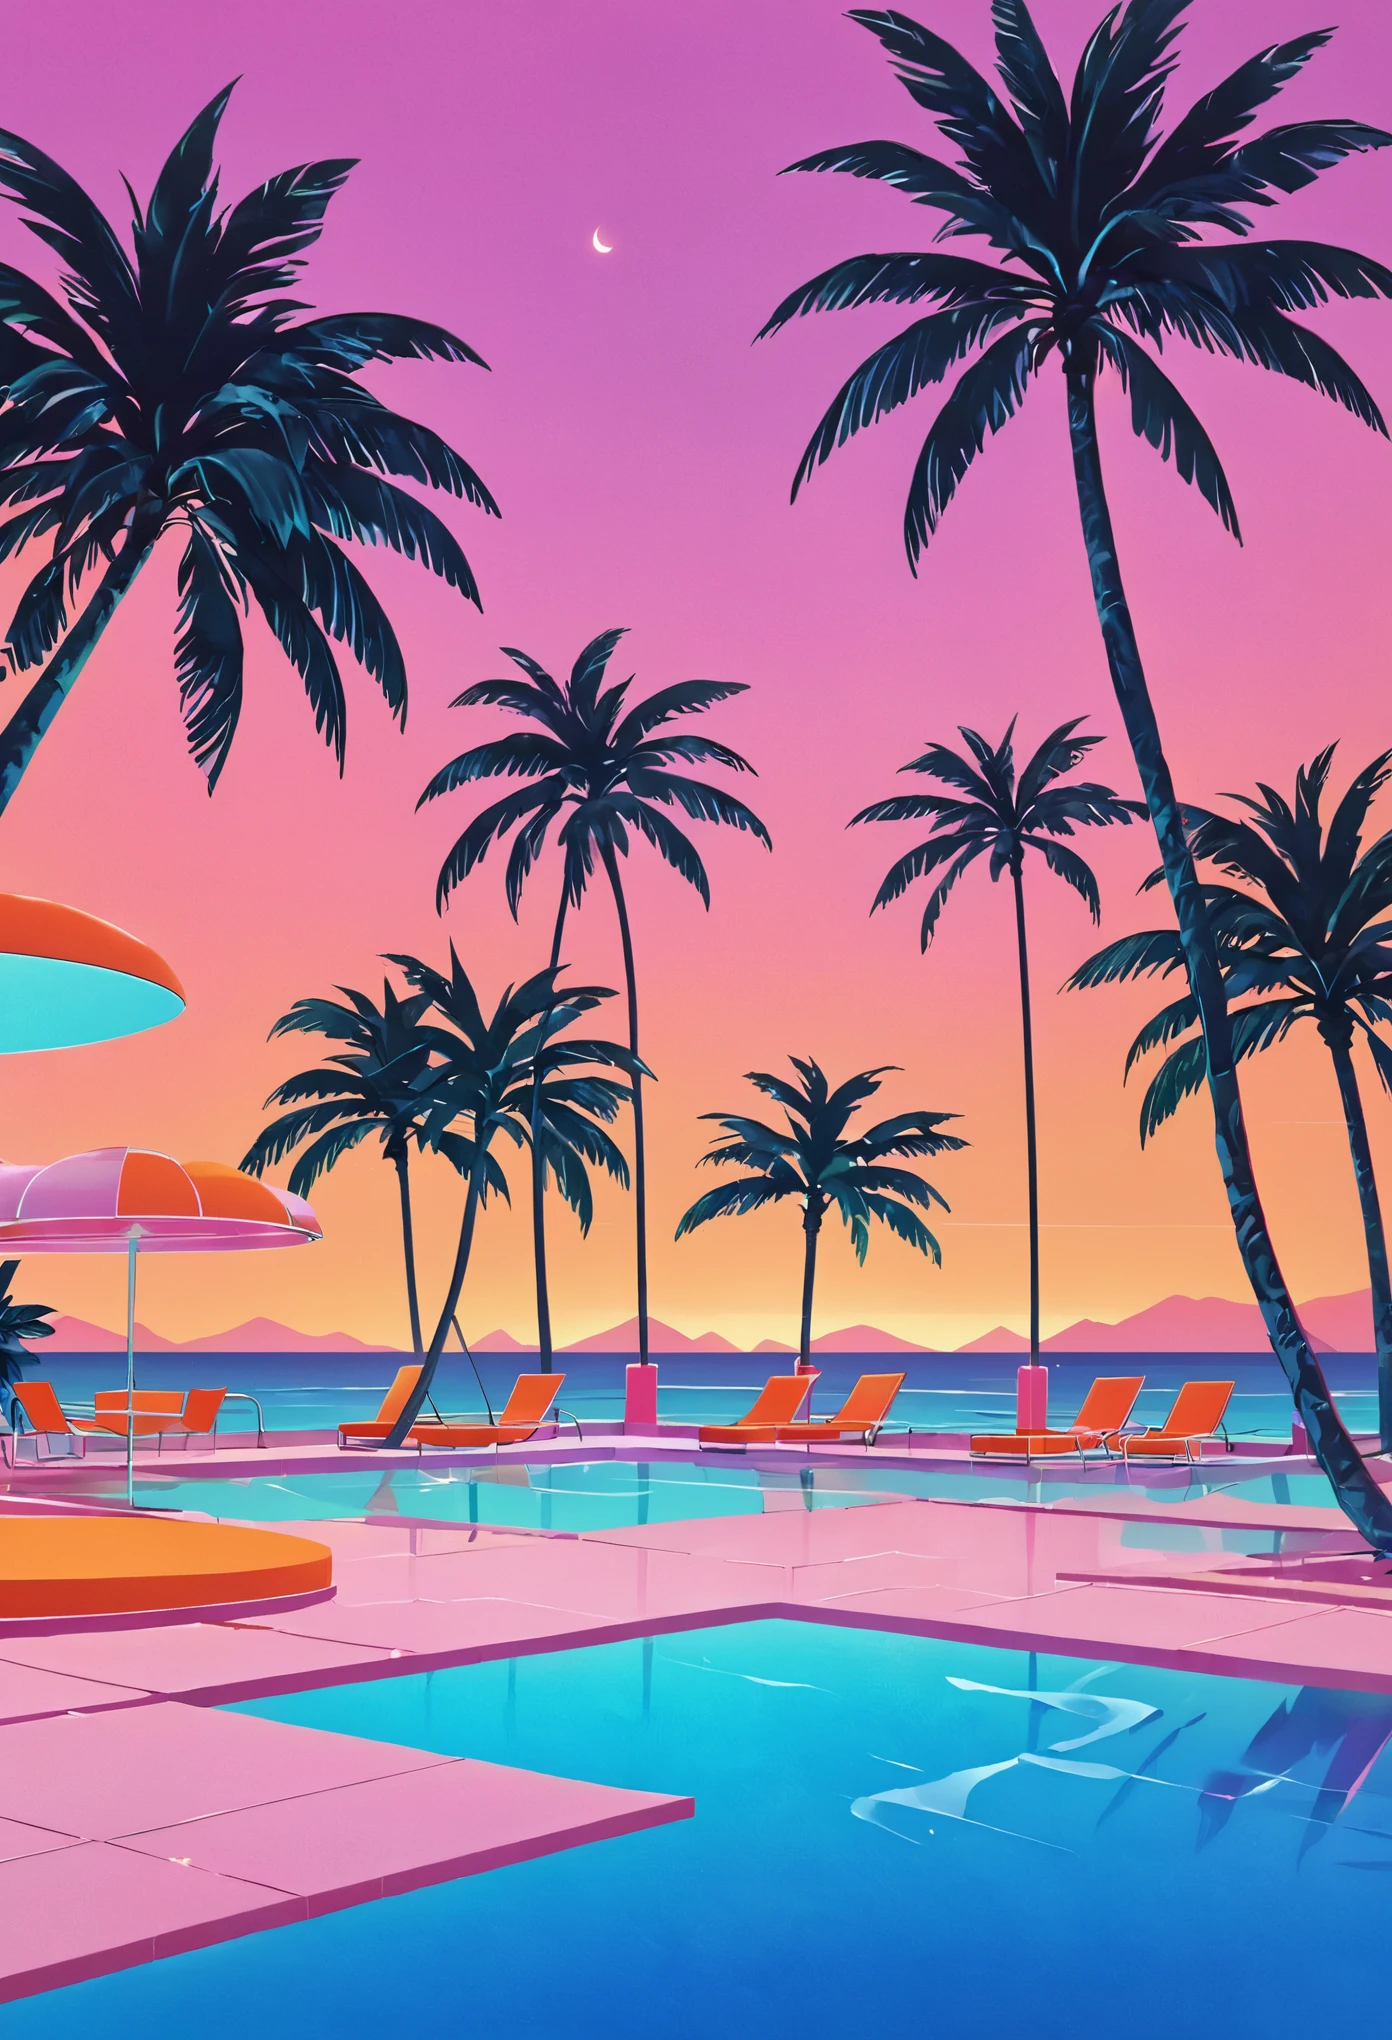 Imaginez une œuvre d’art profondément immergée dans l’esthétique vaporwave des années 80, inspiré du style dynamique de Yoko Honda. Imaginez une scène de piscine et de plage rétro-futuriste au coucher du soleil, où le ciel s&#39;embrase des teintes chaudes d&#39;un coucher de soleil d&#39;été des années 80 : des oranges intenses, roses, et des rouges se reflétant sur les eaux tranquilles de la mer et de la piscine. Autour de la piscine, les palmiers et les cocotiers éclairés au néon se balancent doucement, améliorant l&#39;atmosphère tropicale et surréaliste. Des néons aux motifs géométriques éclairent la scène, jetant une lueur onirique sur tout. L&#39;arrière-plan présente un bar chic en bord de plage avec des intérieurs visibles à travers de grandes fenêtres en verre., présentant une pièce avec des murs et des sols aux couleurs pastel recouverts de luxueuses textures de terrazzo et de marbre. L&#39;ambiance générale allie luxe nostalgique et dynamisme, palettes de couleurs chaudes, créant une scène à la fois intemporelle et nettement évocatrice des années 80.